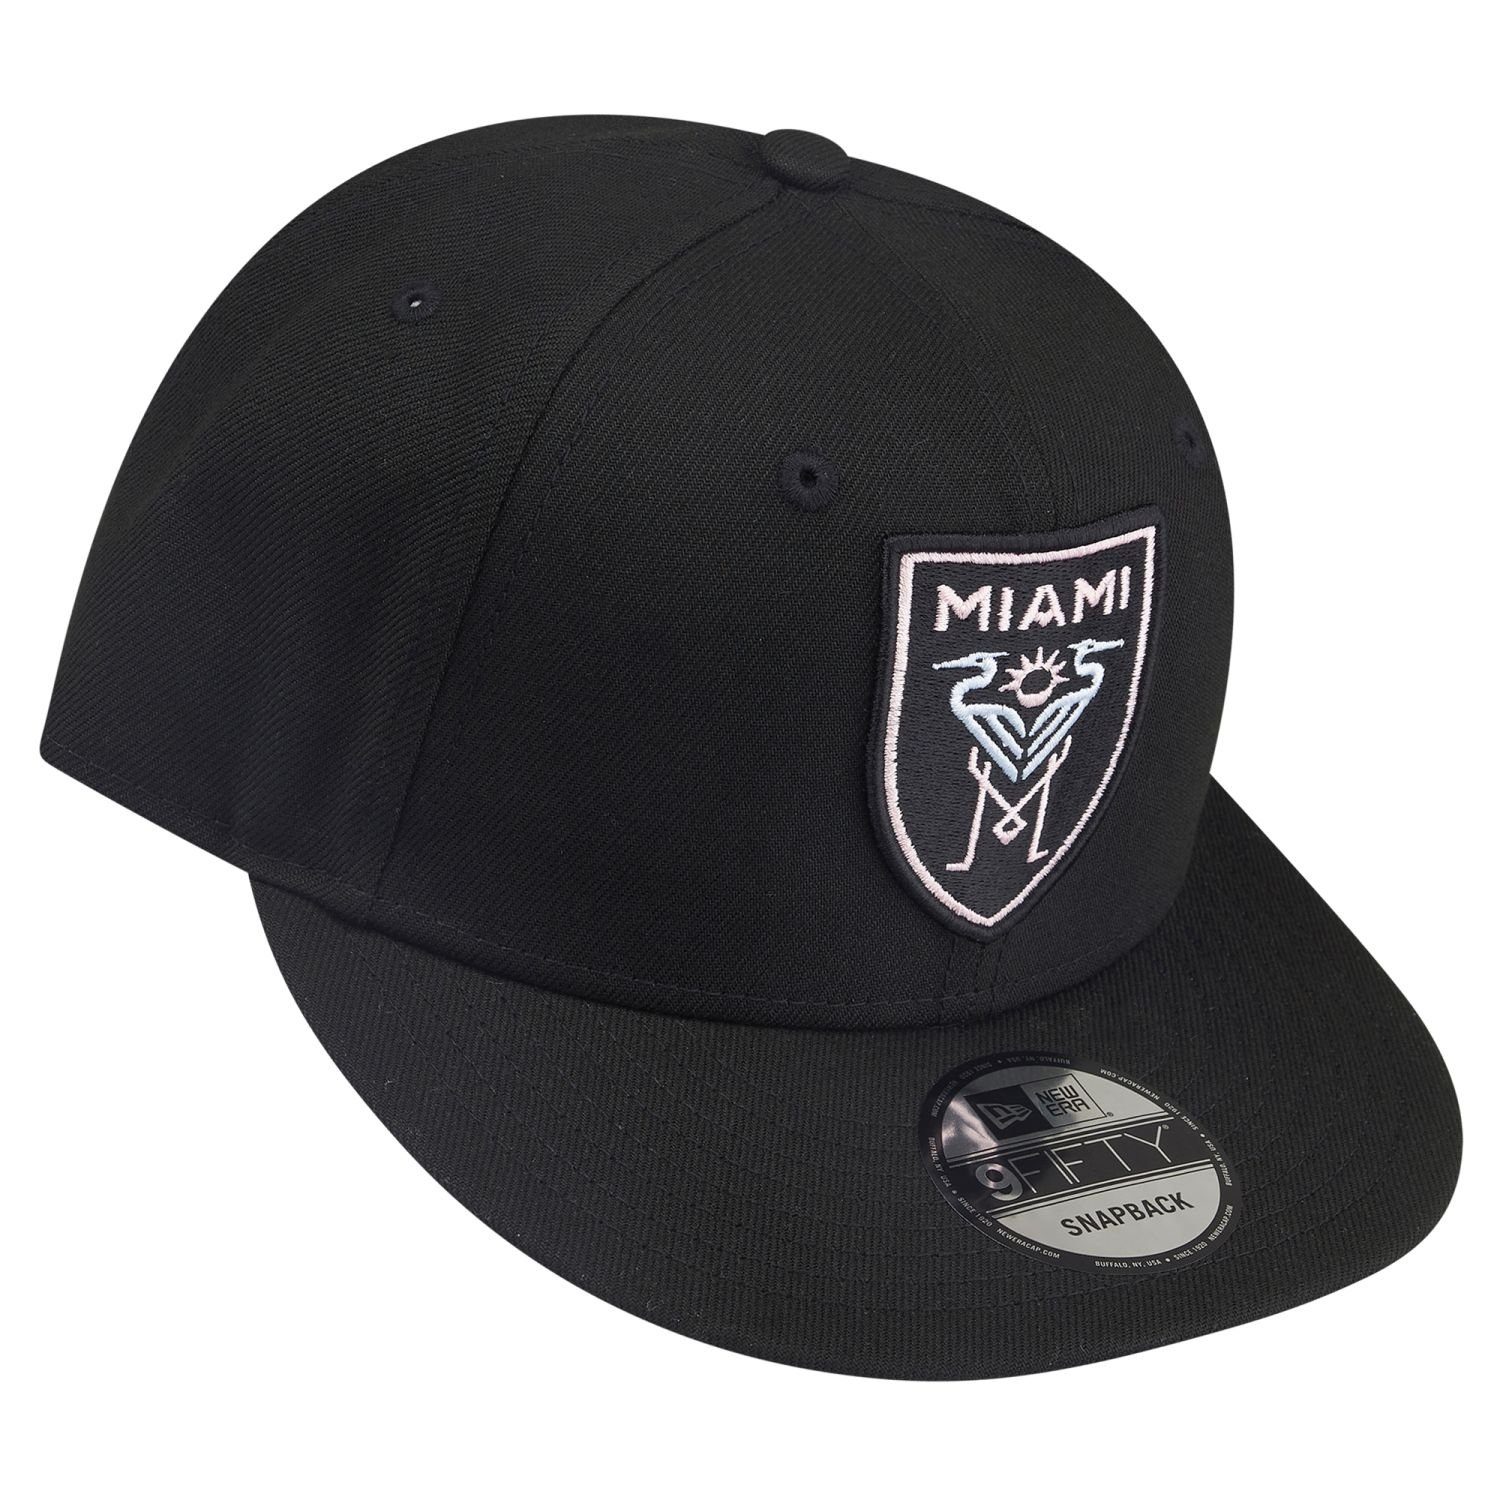 New 9Fifty Inter Snapback MLS Era Cap Miami